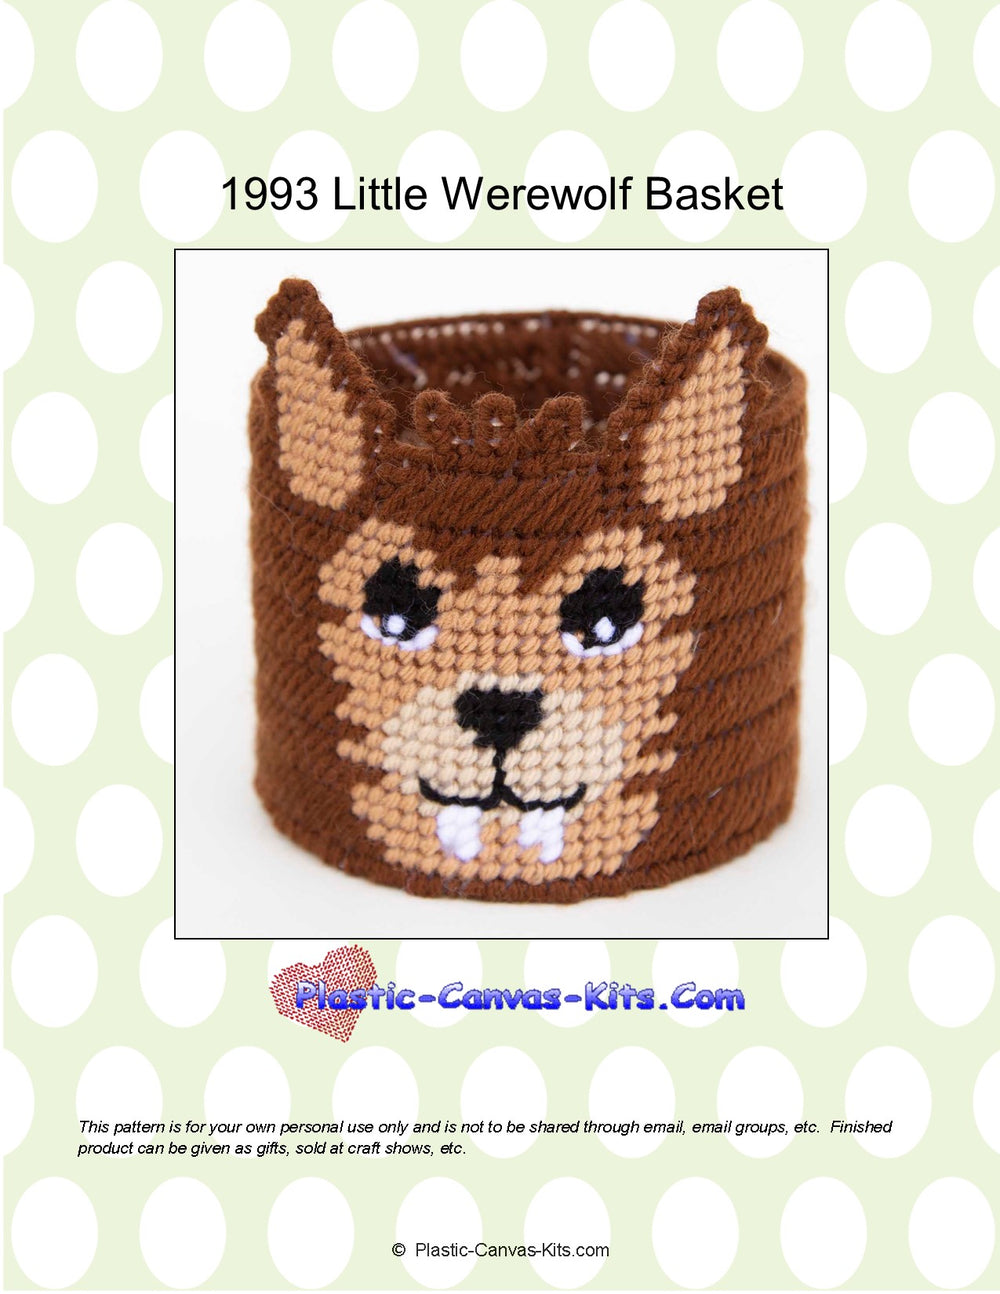 Little Werewolf Basket